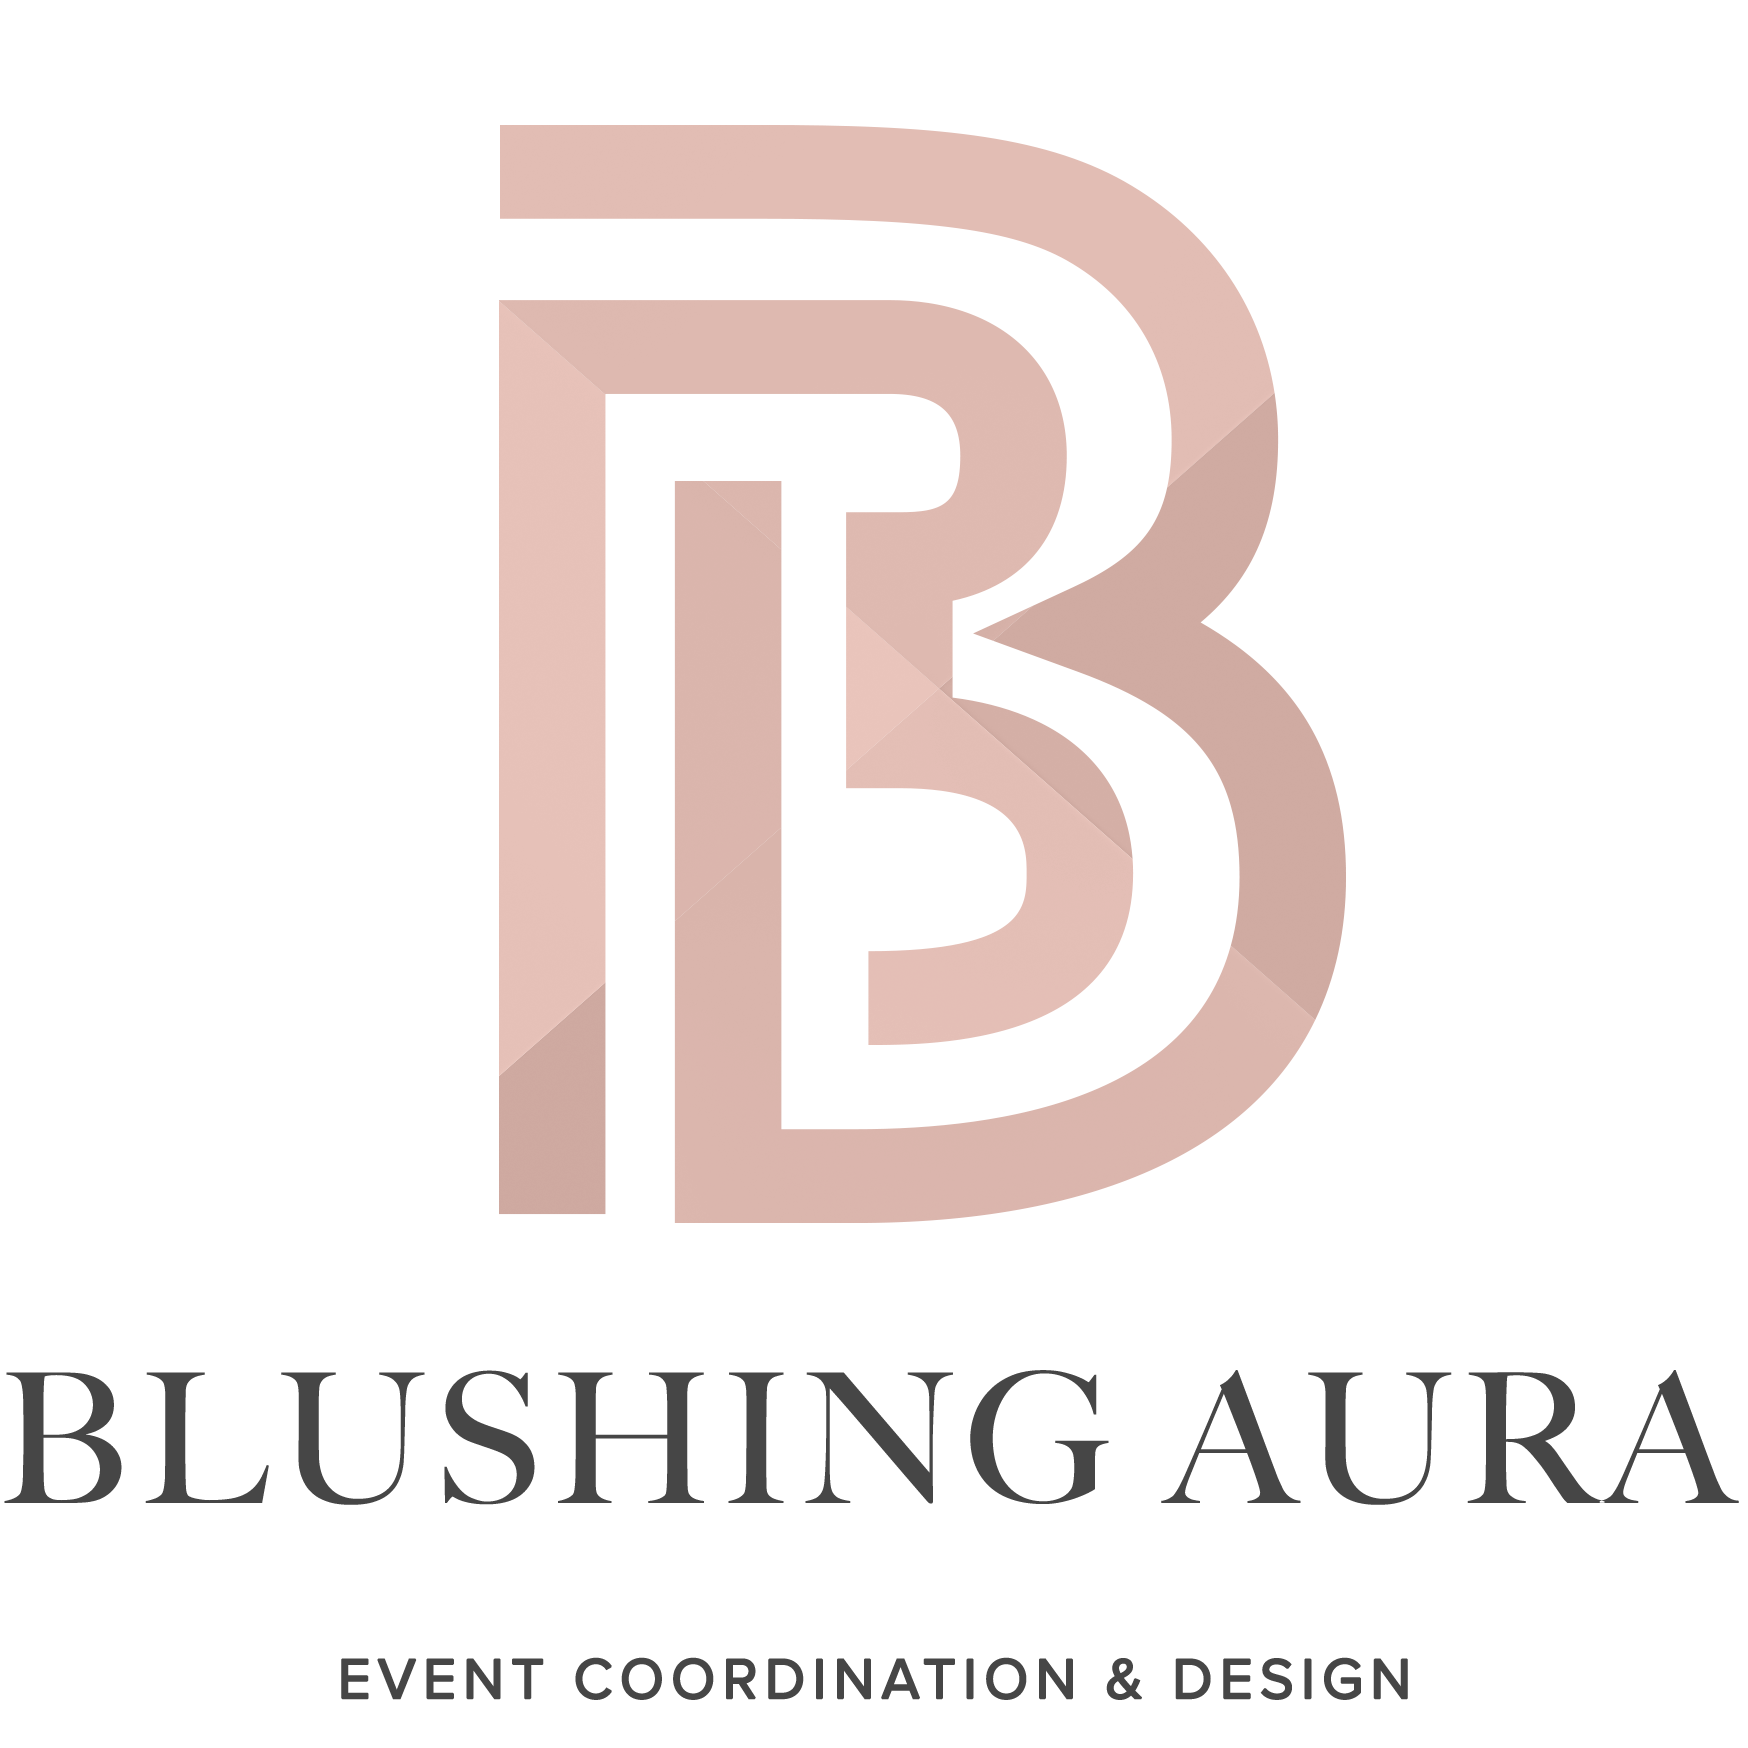 Blushing Aura